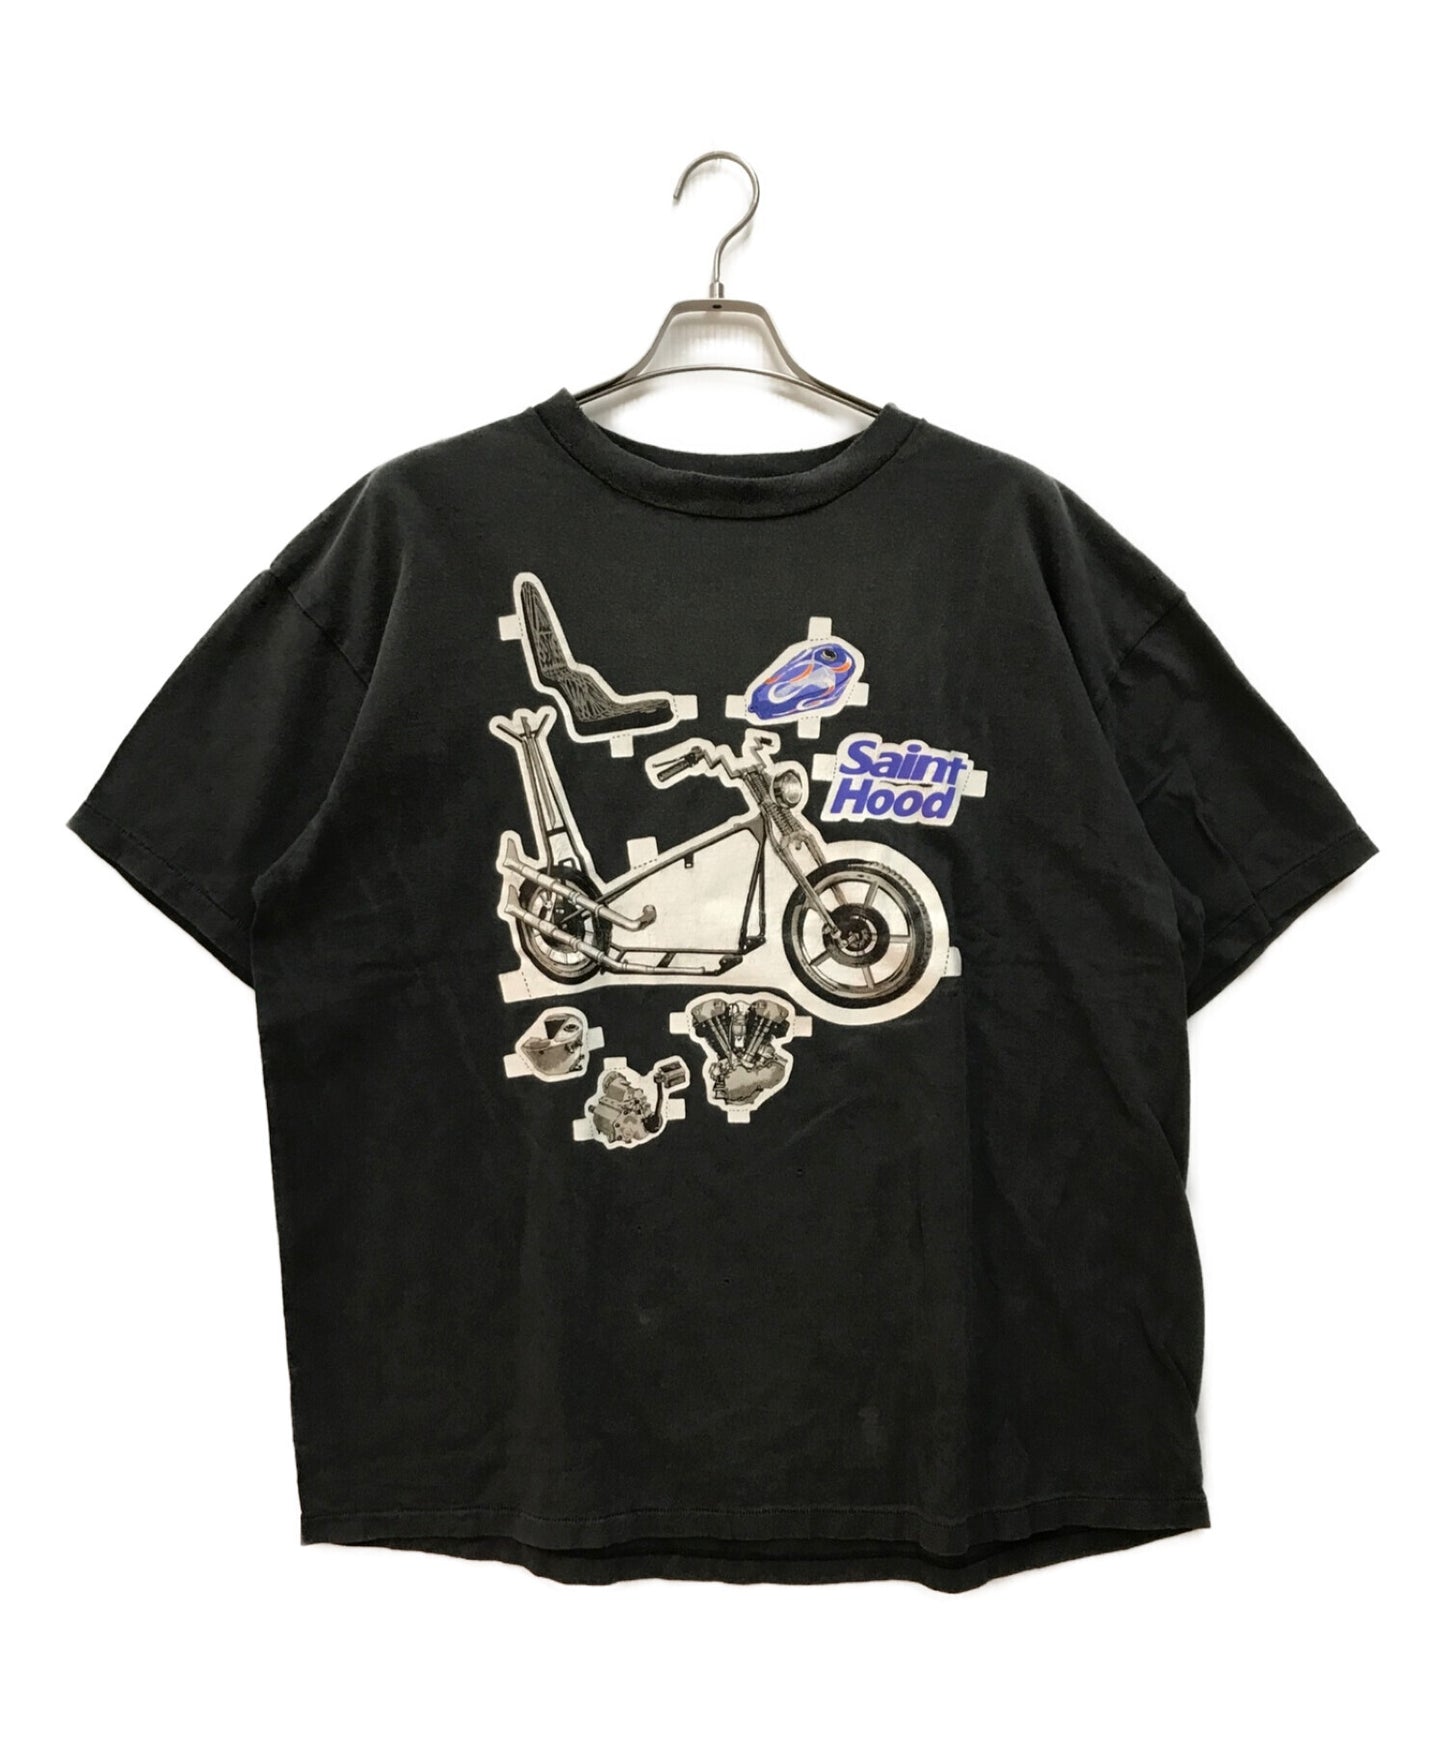 세인트 마이클 STHD SS 티/자전거 오토바이 인쇄 손상된 티셔츠 짧은 슬리브 컷 및 바느질 SM-S23-0000-114/23119SMN-CSM01S